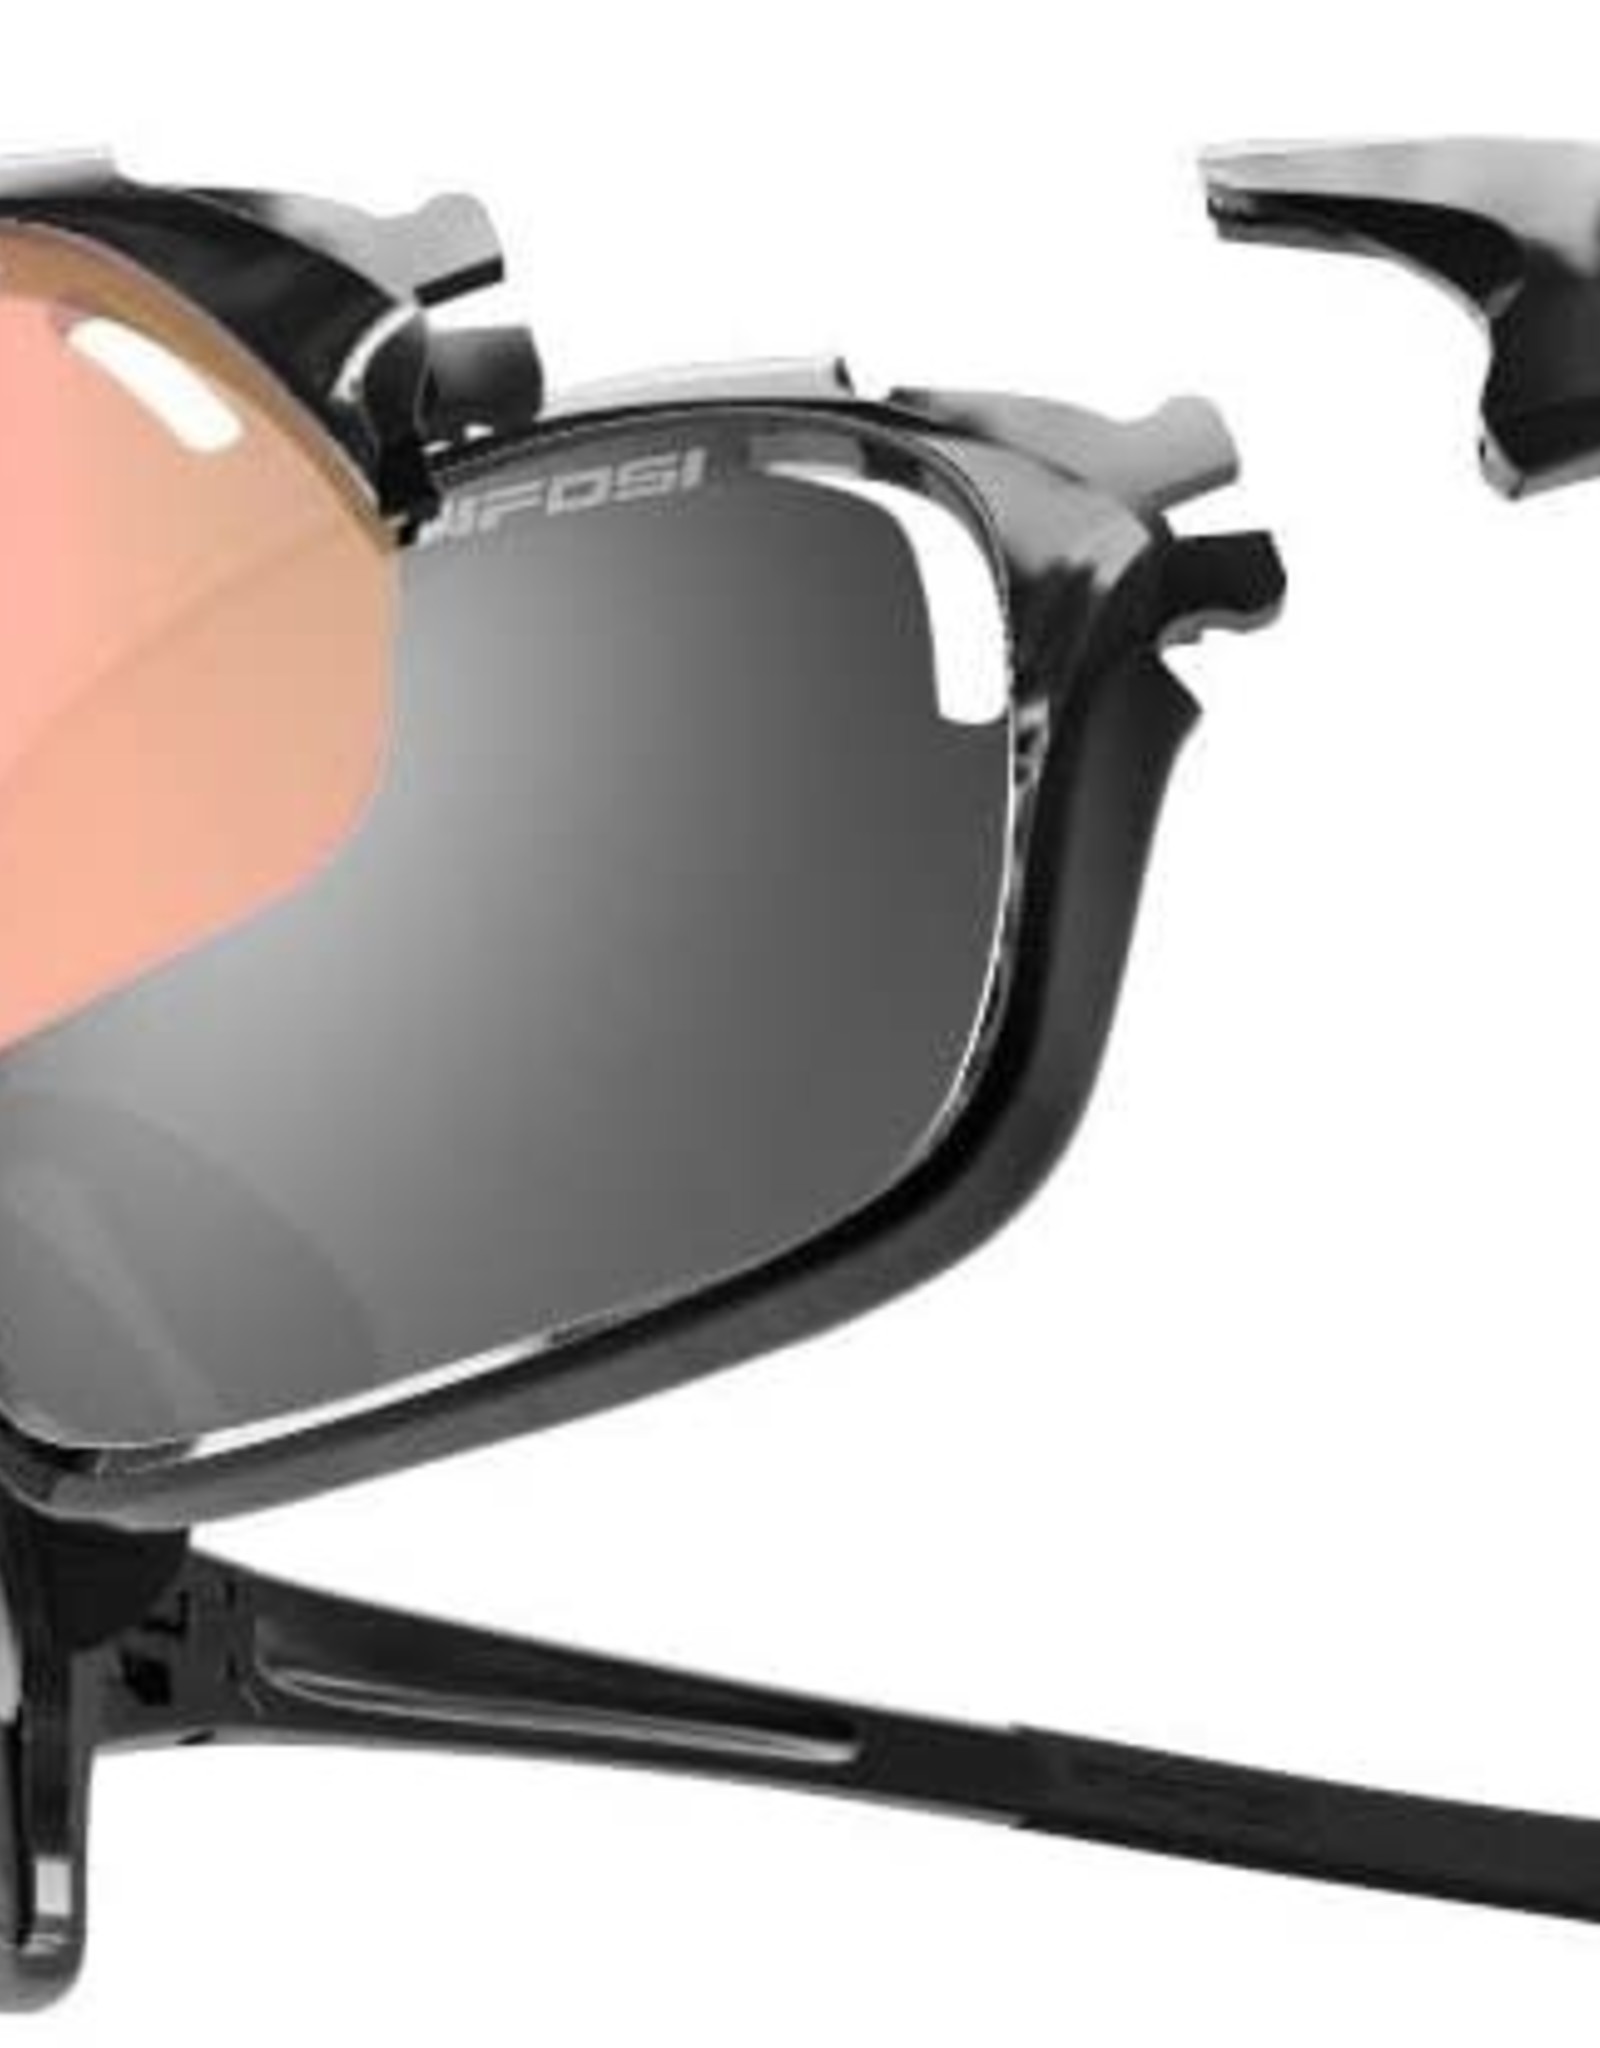 Launch S.F.H., Gloss Black Tifosi Pro Sunglasses